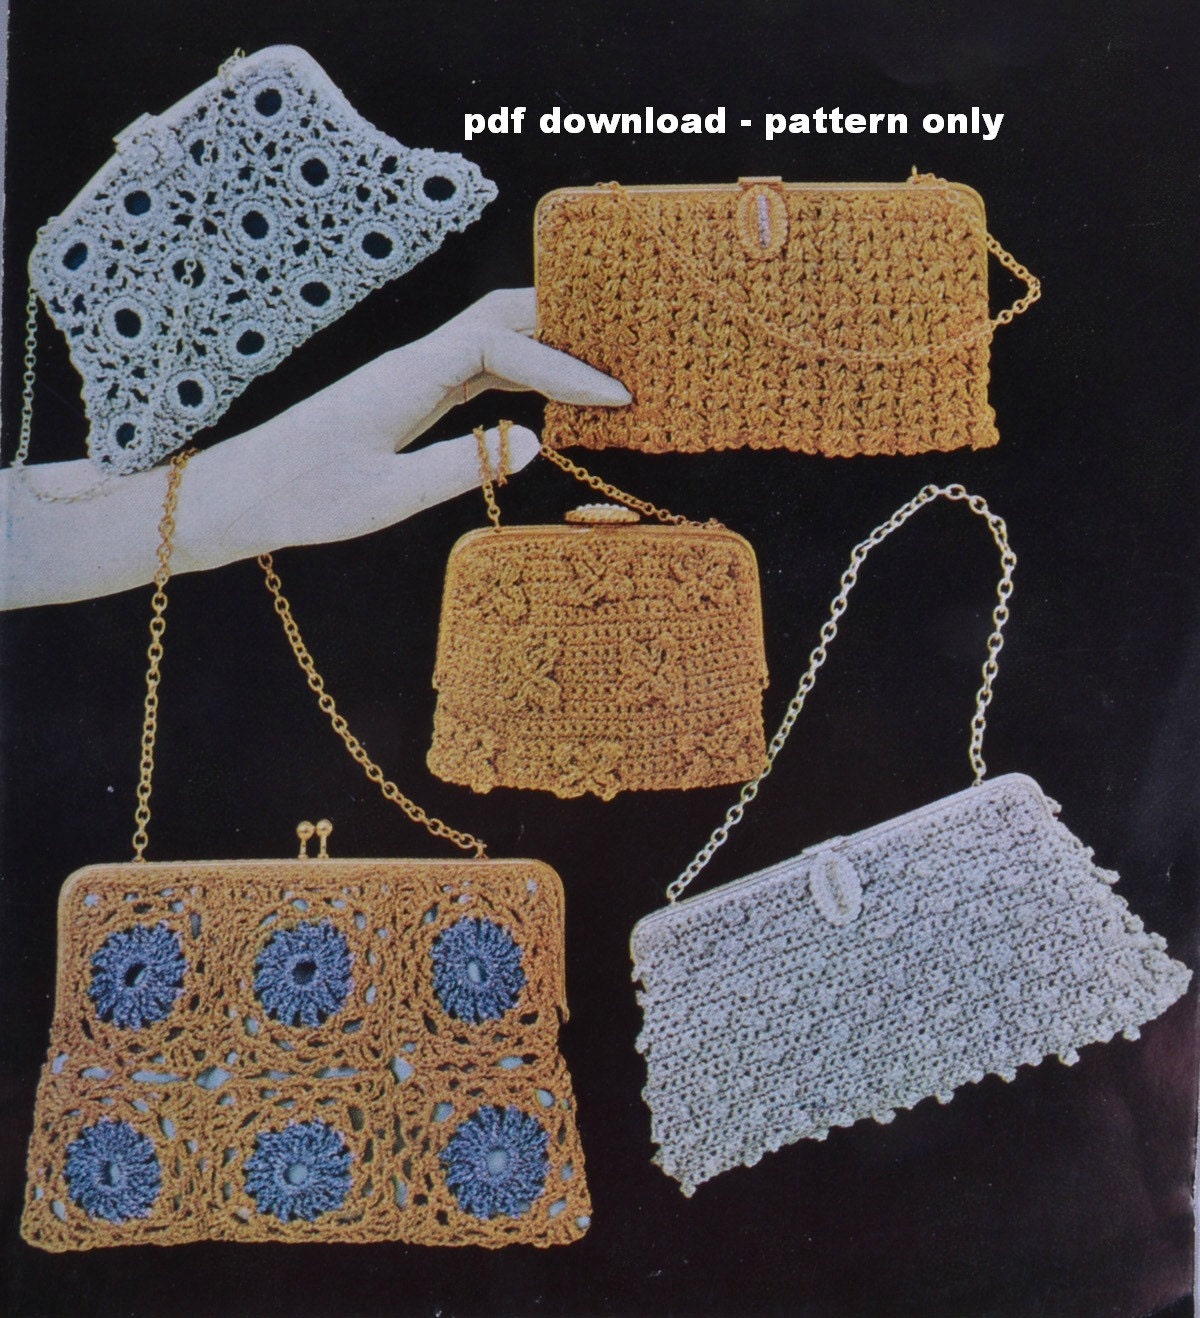 Vintage Crochet Pouch Bag